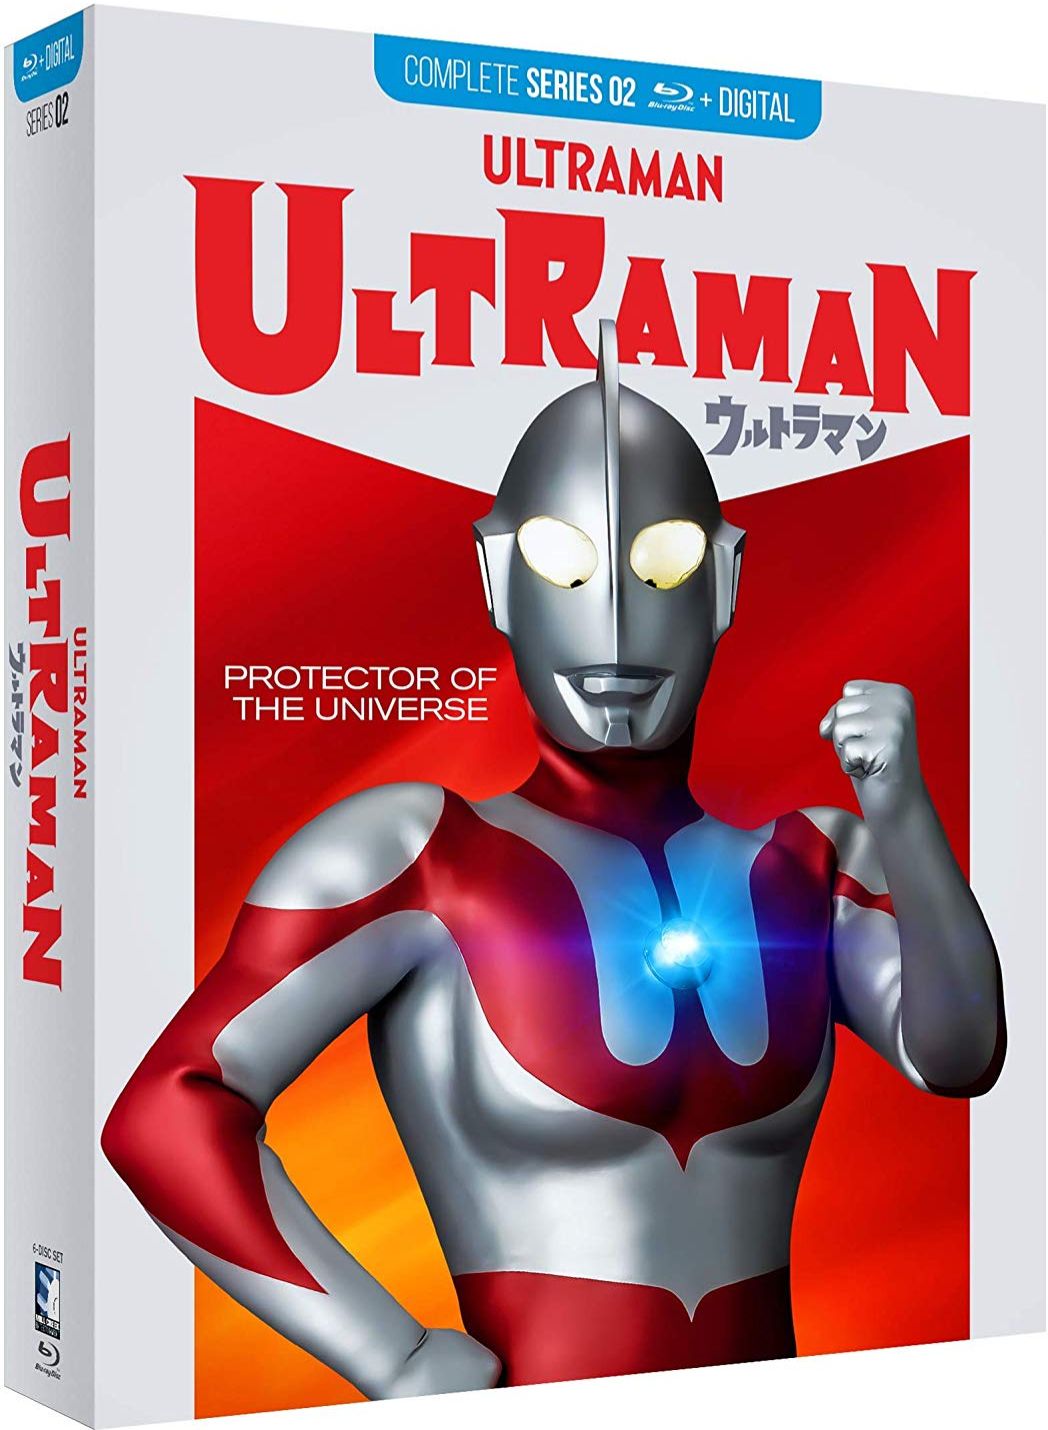 Ultraman blu-ray